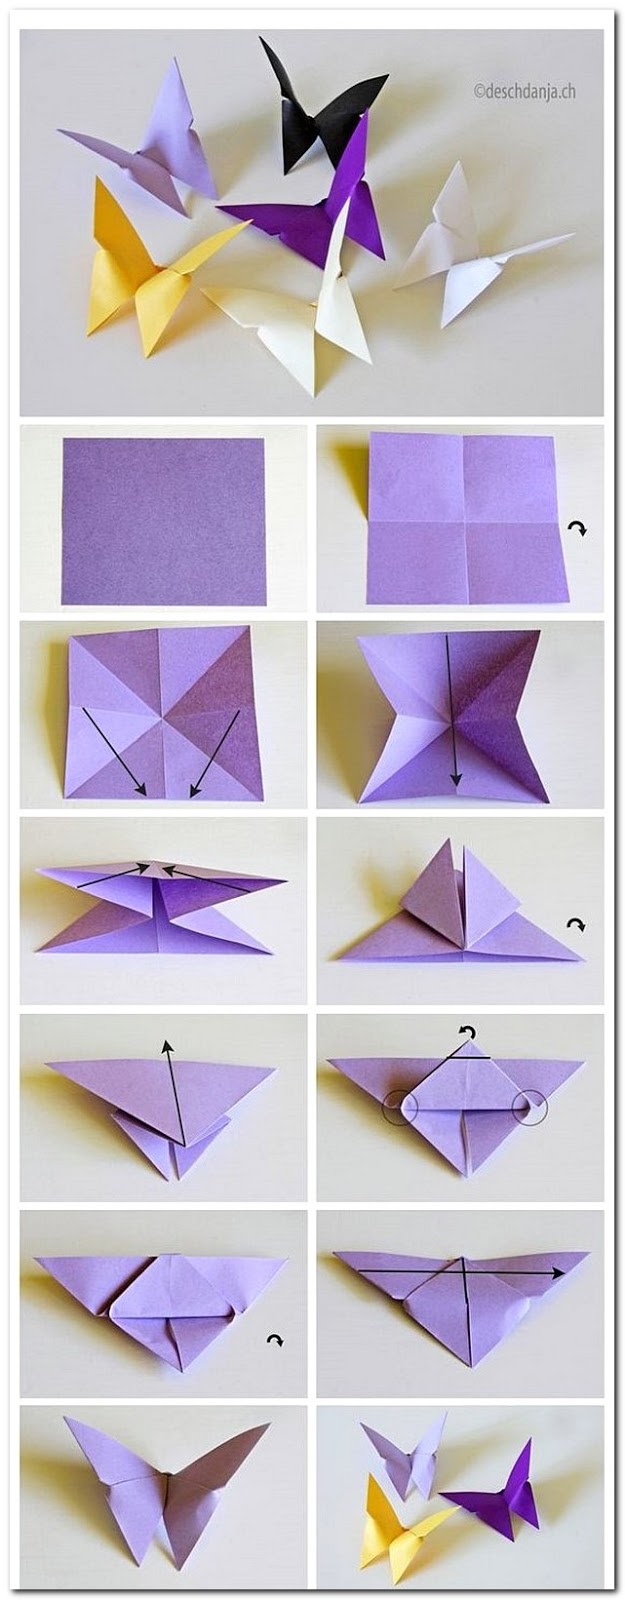 Cara Membuat Kartu Nama Dari Kertas Origami Delinewstv